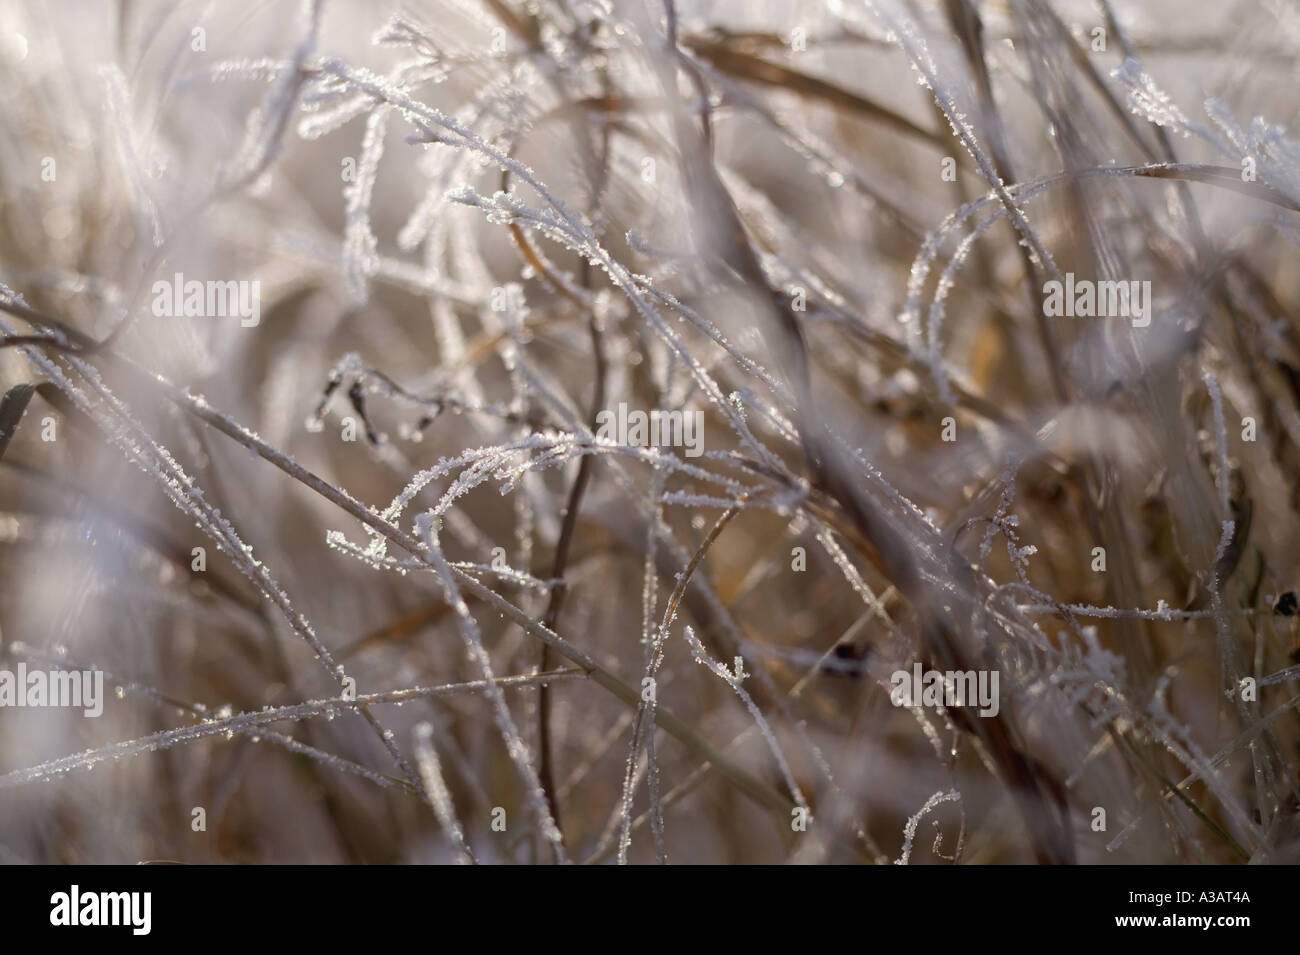 A proximité de la glace accrochée à hautes herbes après une tempête hivernale Banque D'Images